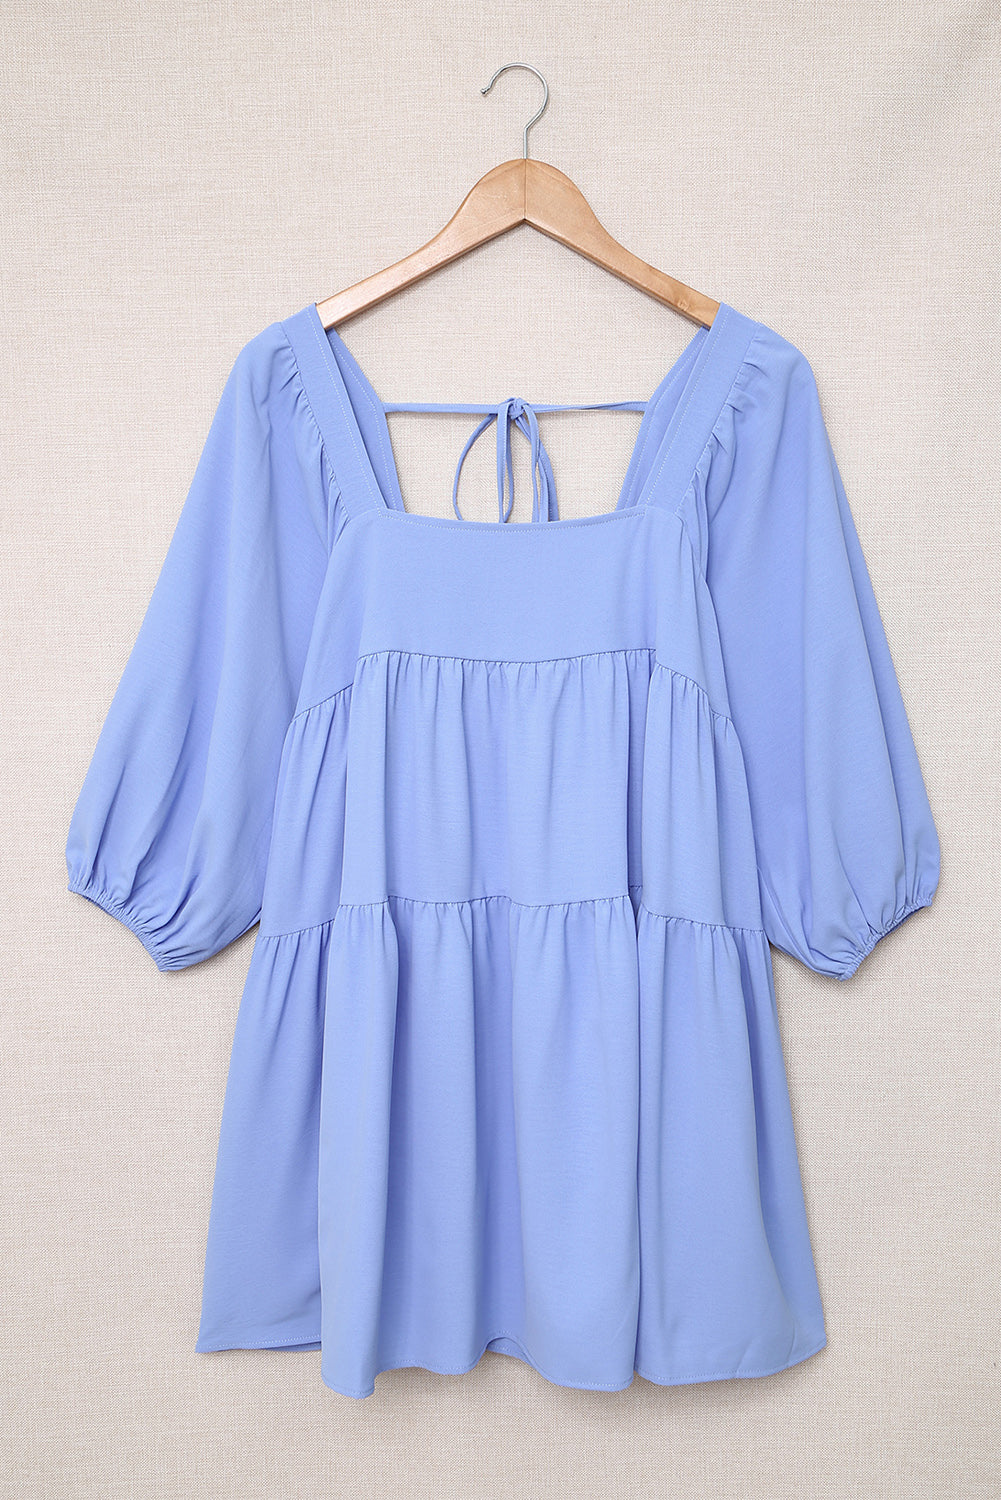 Mini-robe bleu ciel à col carré, demi-manches, haute et basse